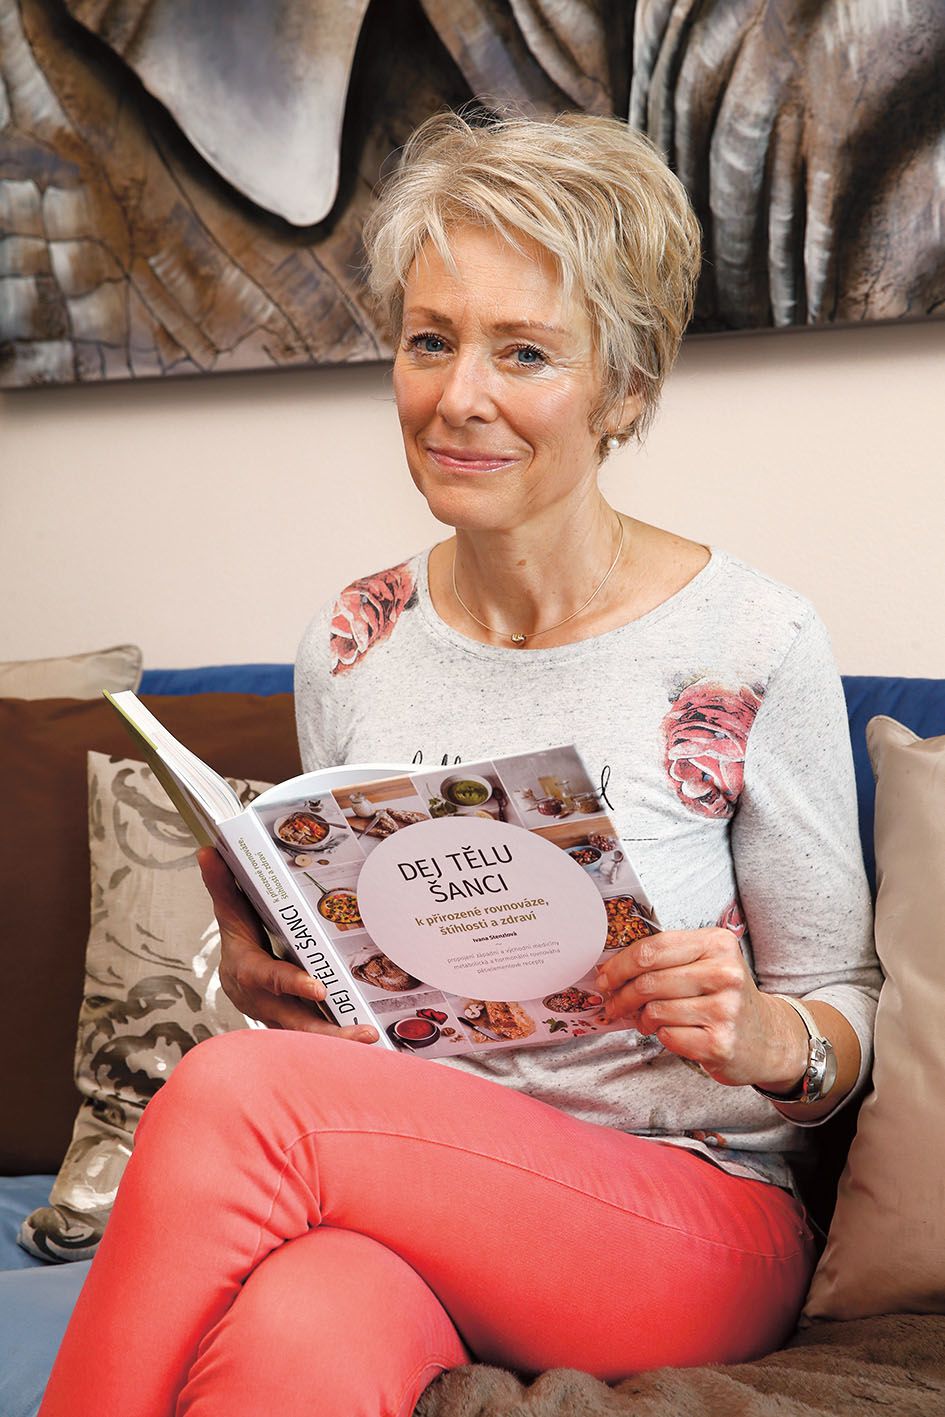 Paní Ivana Stenzlová je autorkou jedinečné knihy Dej tělu šanci od společnosti Smartpress. Jde o výklad metabolické a hormonální rovnováhy, způsobu stravování a vaření podle pěti elementů.